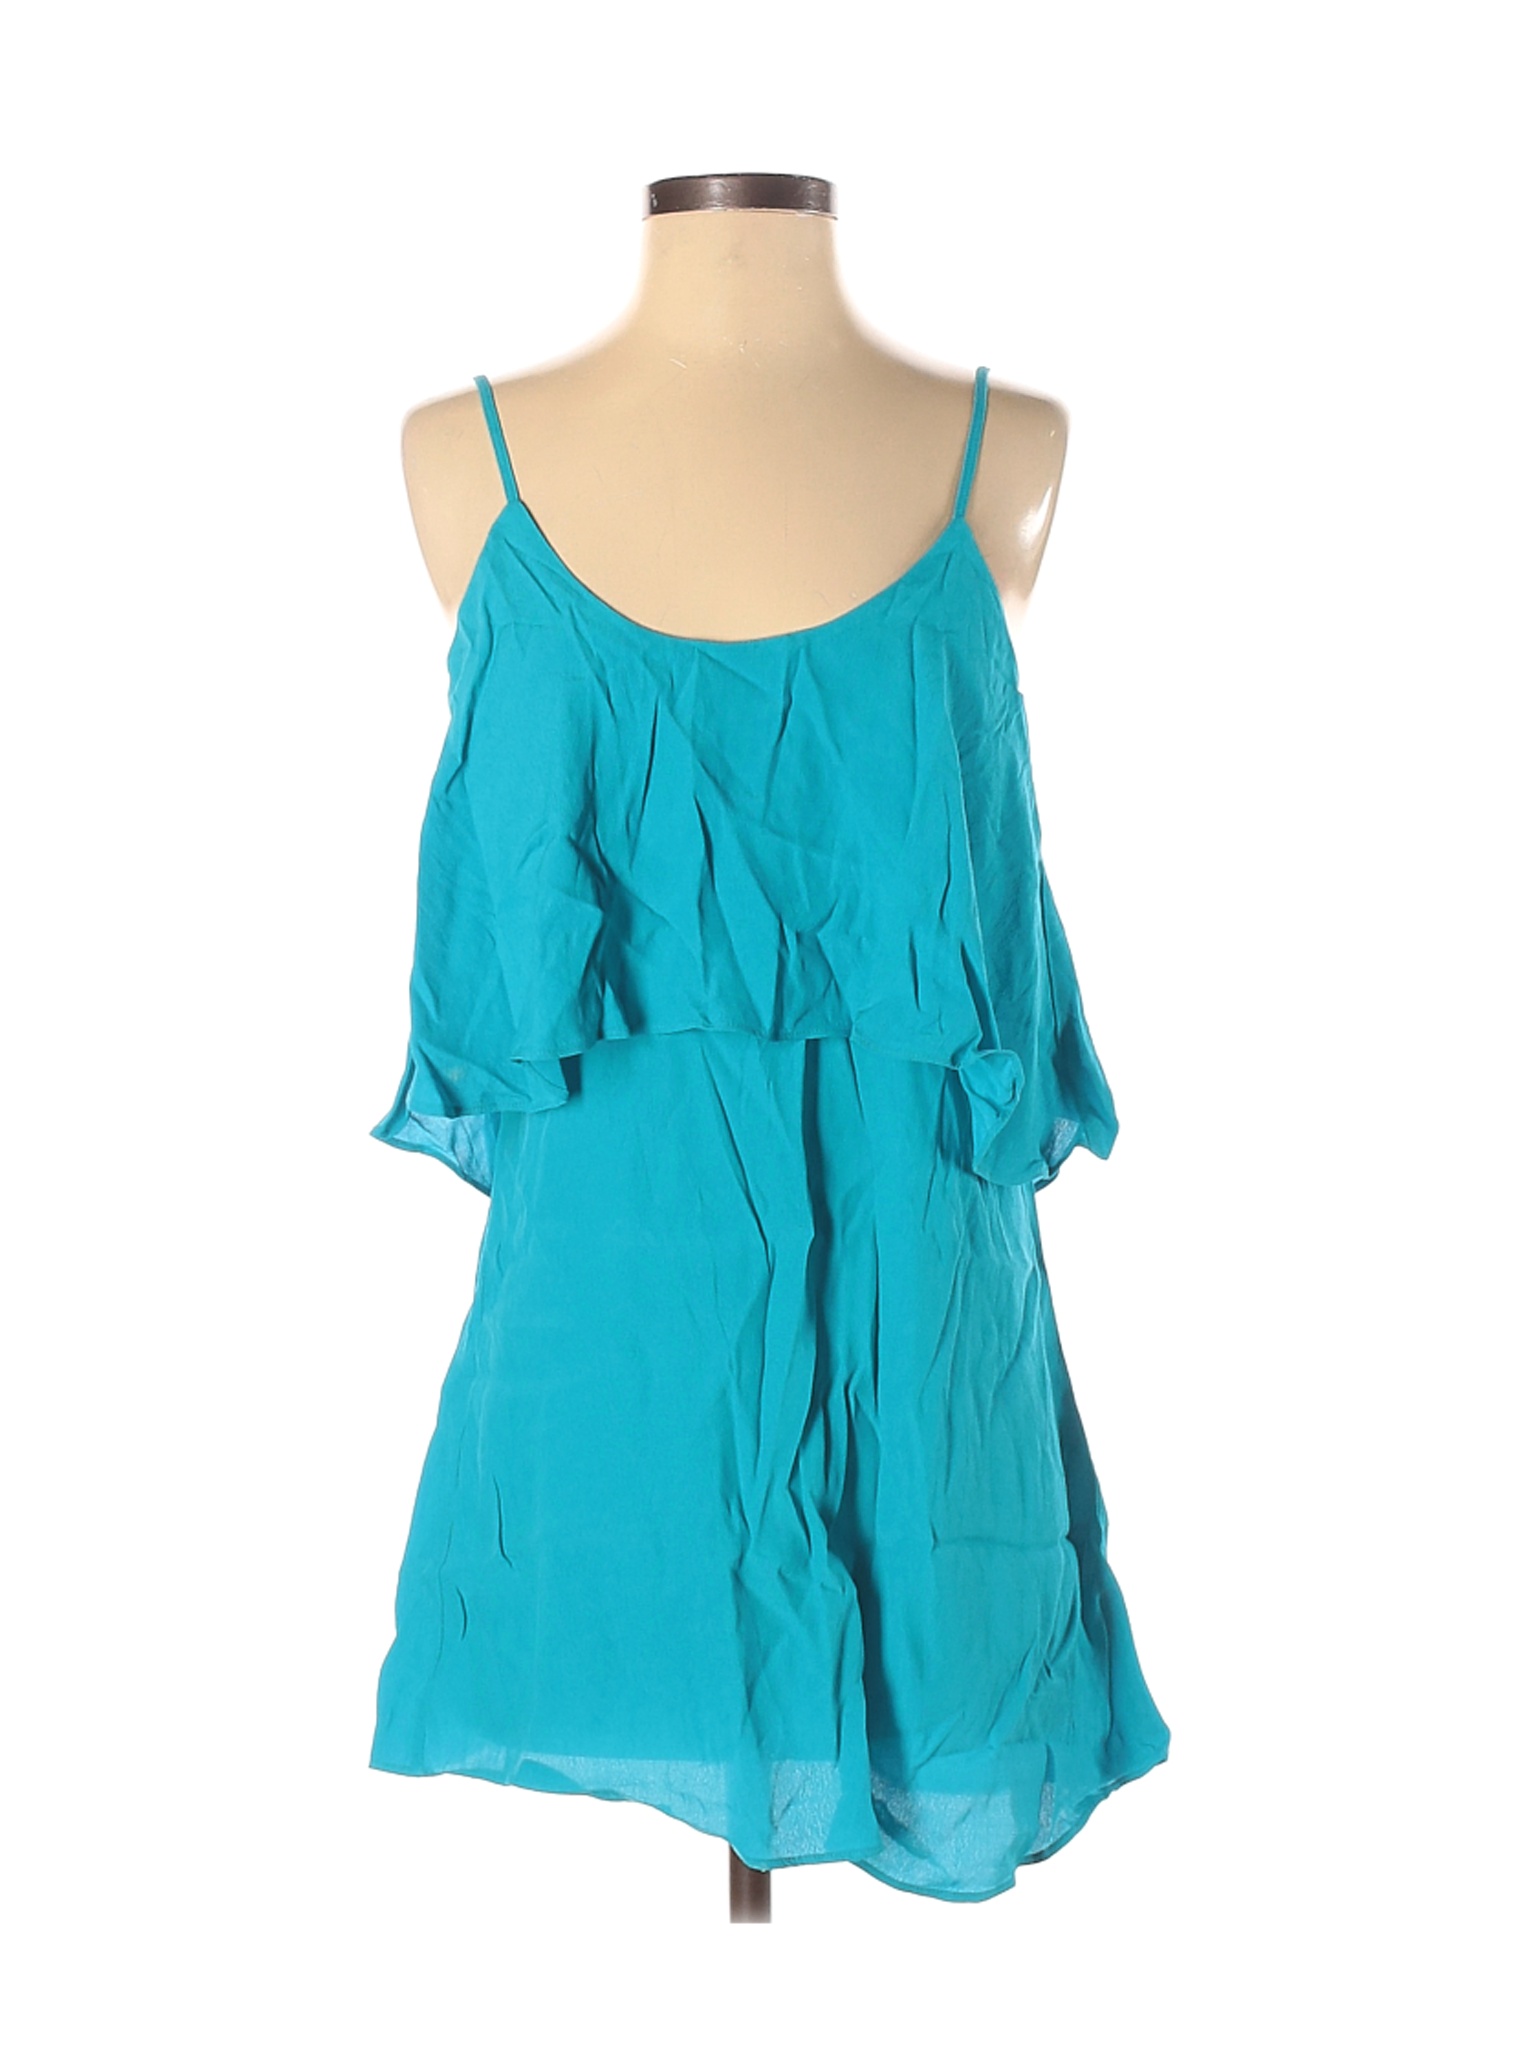 Forever 21 Women Blue Casual Dress S | eBay